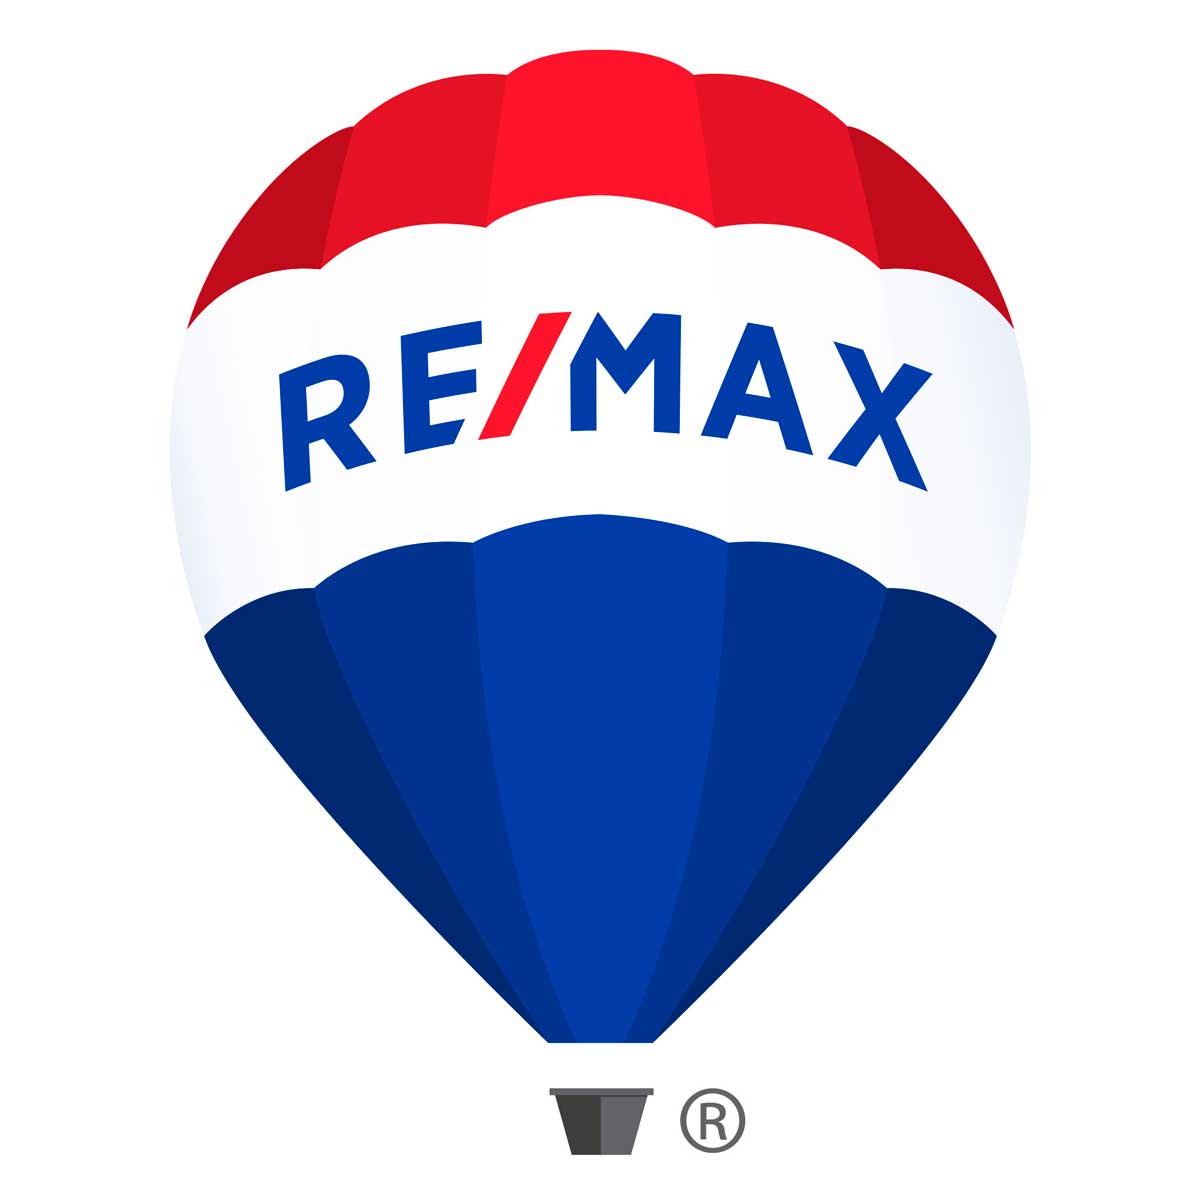 www.remax.com.ar